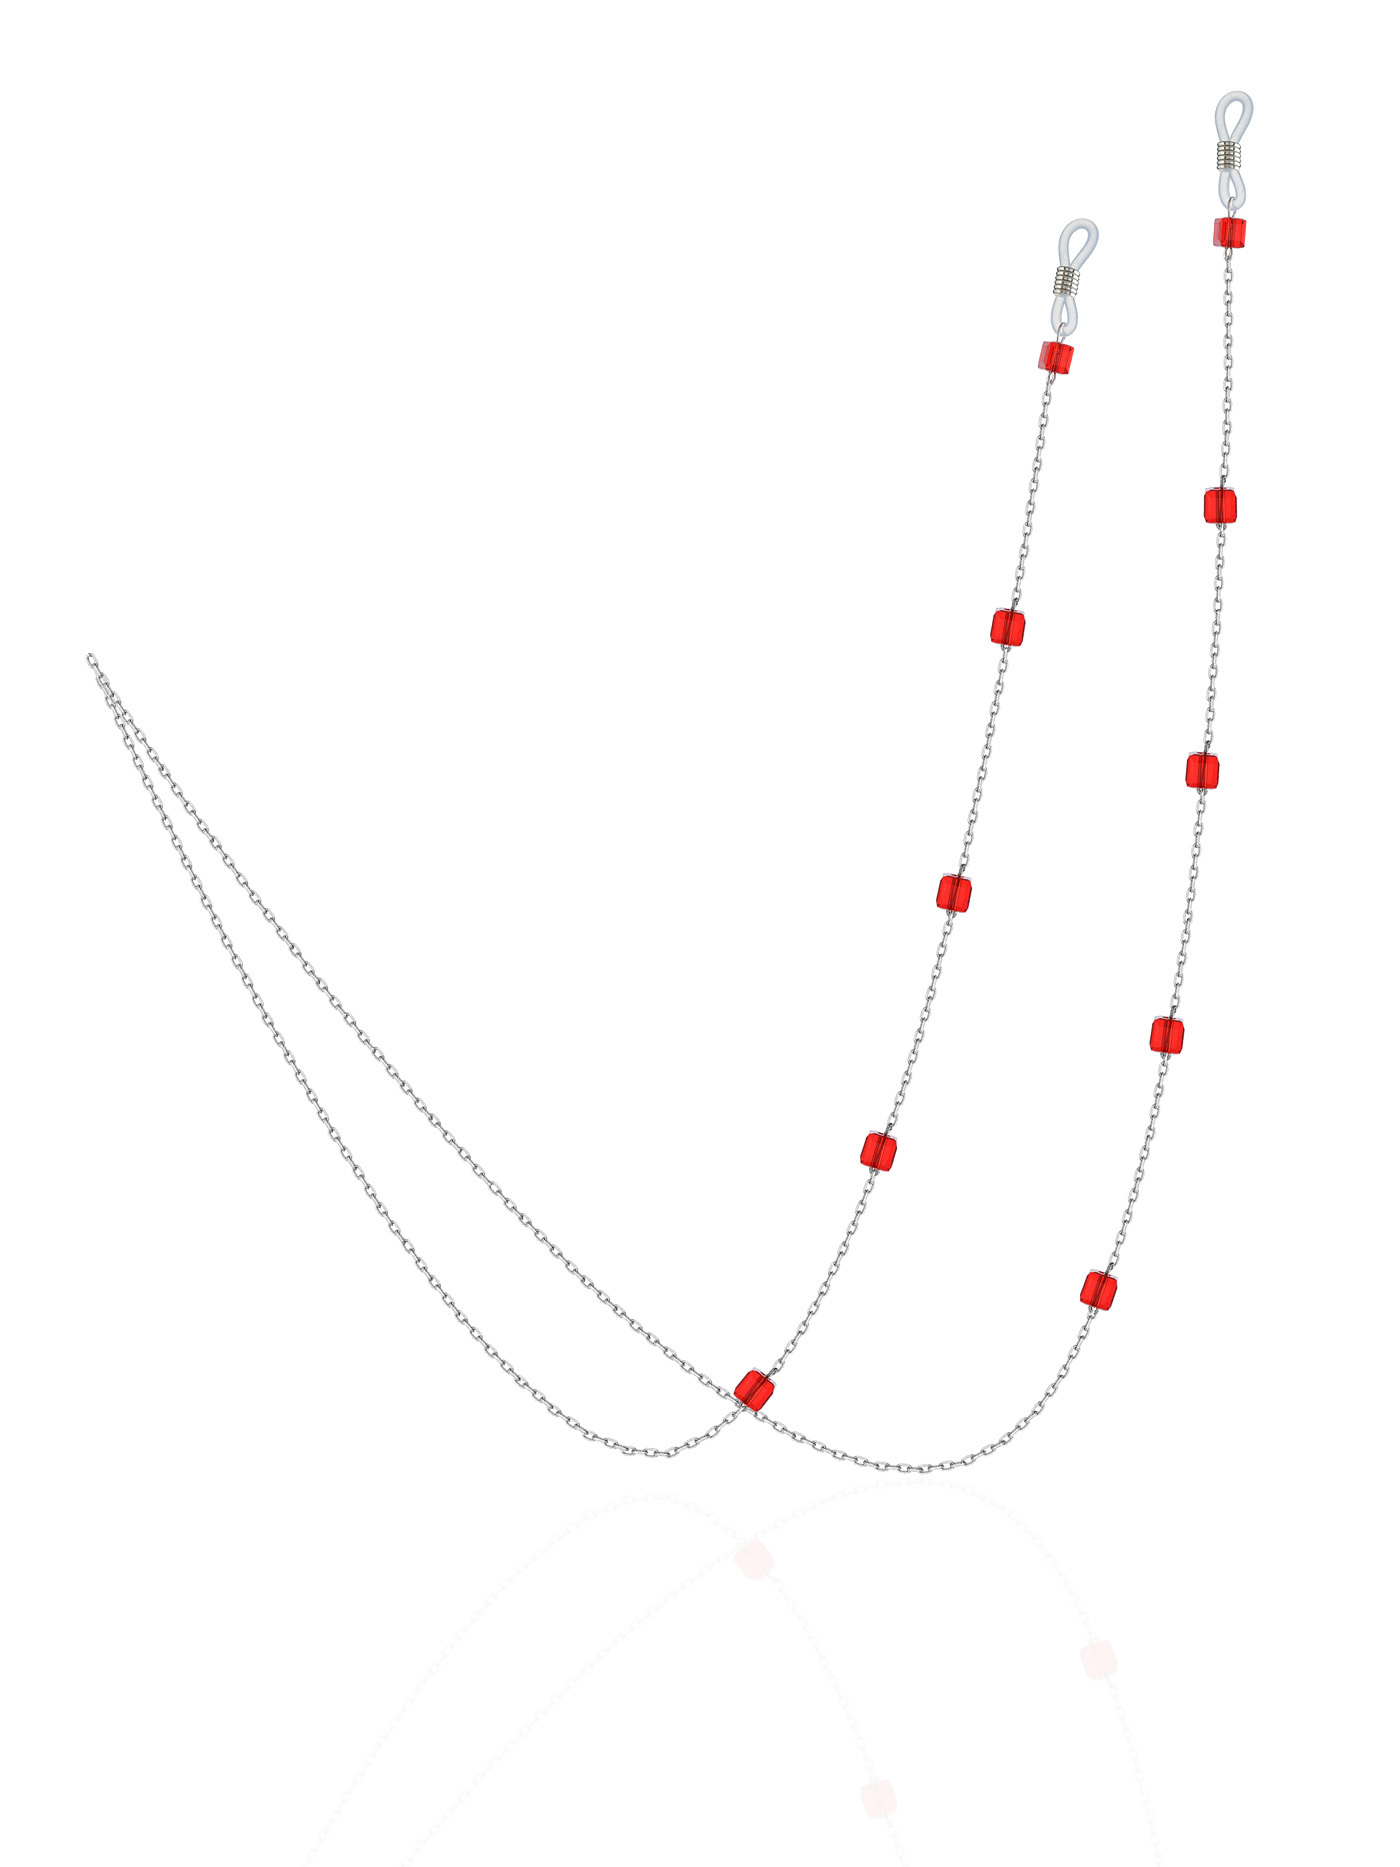 Серебряная цепочка для очков, украшенная красными кристаллами премиум-качества